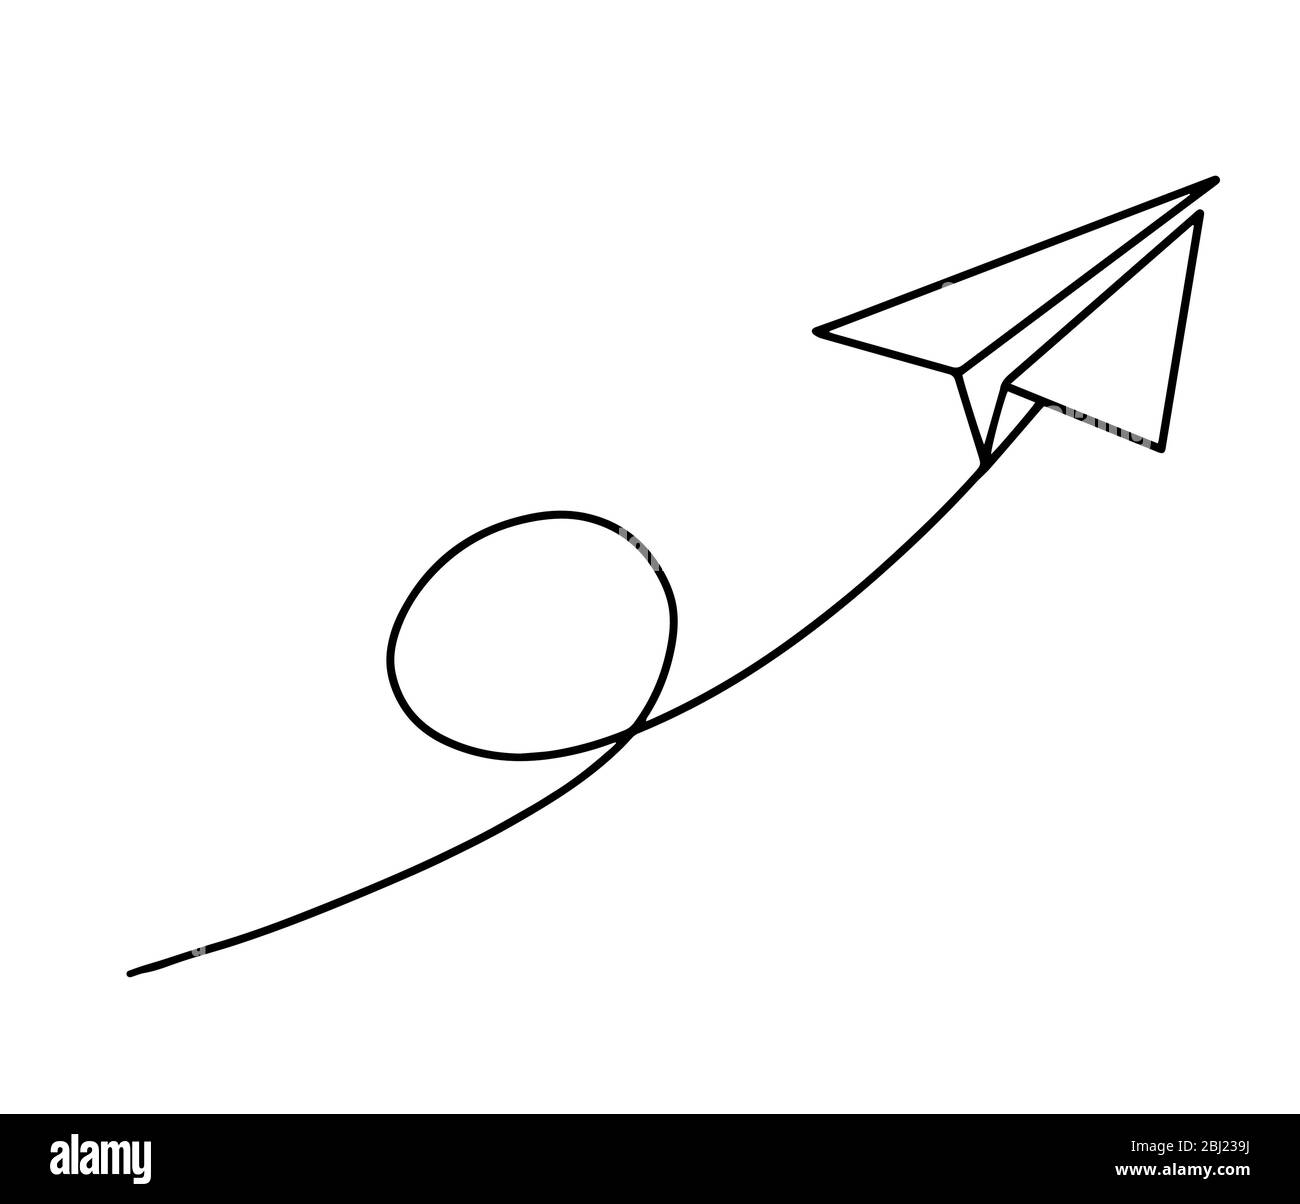 Vol d'un plan en papier avec une ligne continue en dessin sur fond blanc Illustration de Vecteur